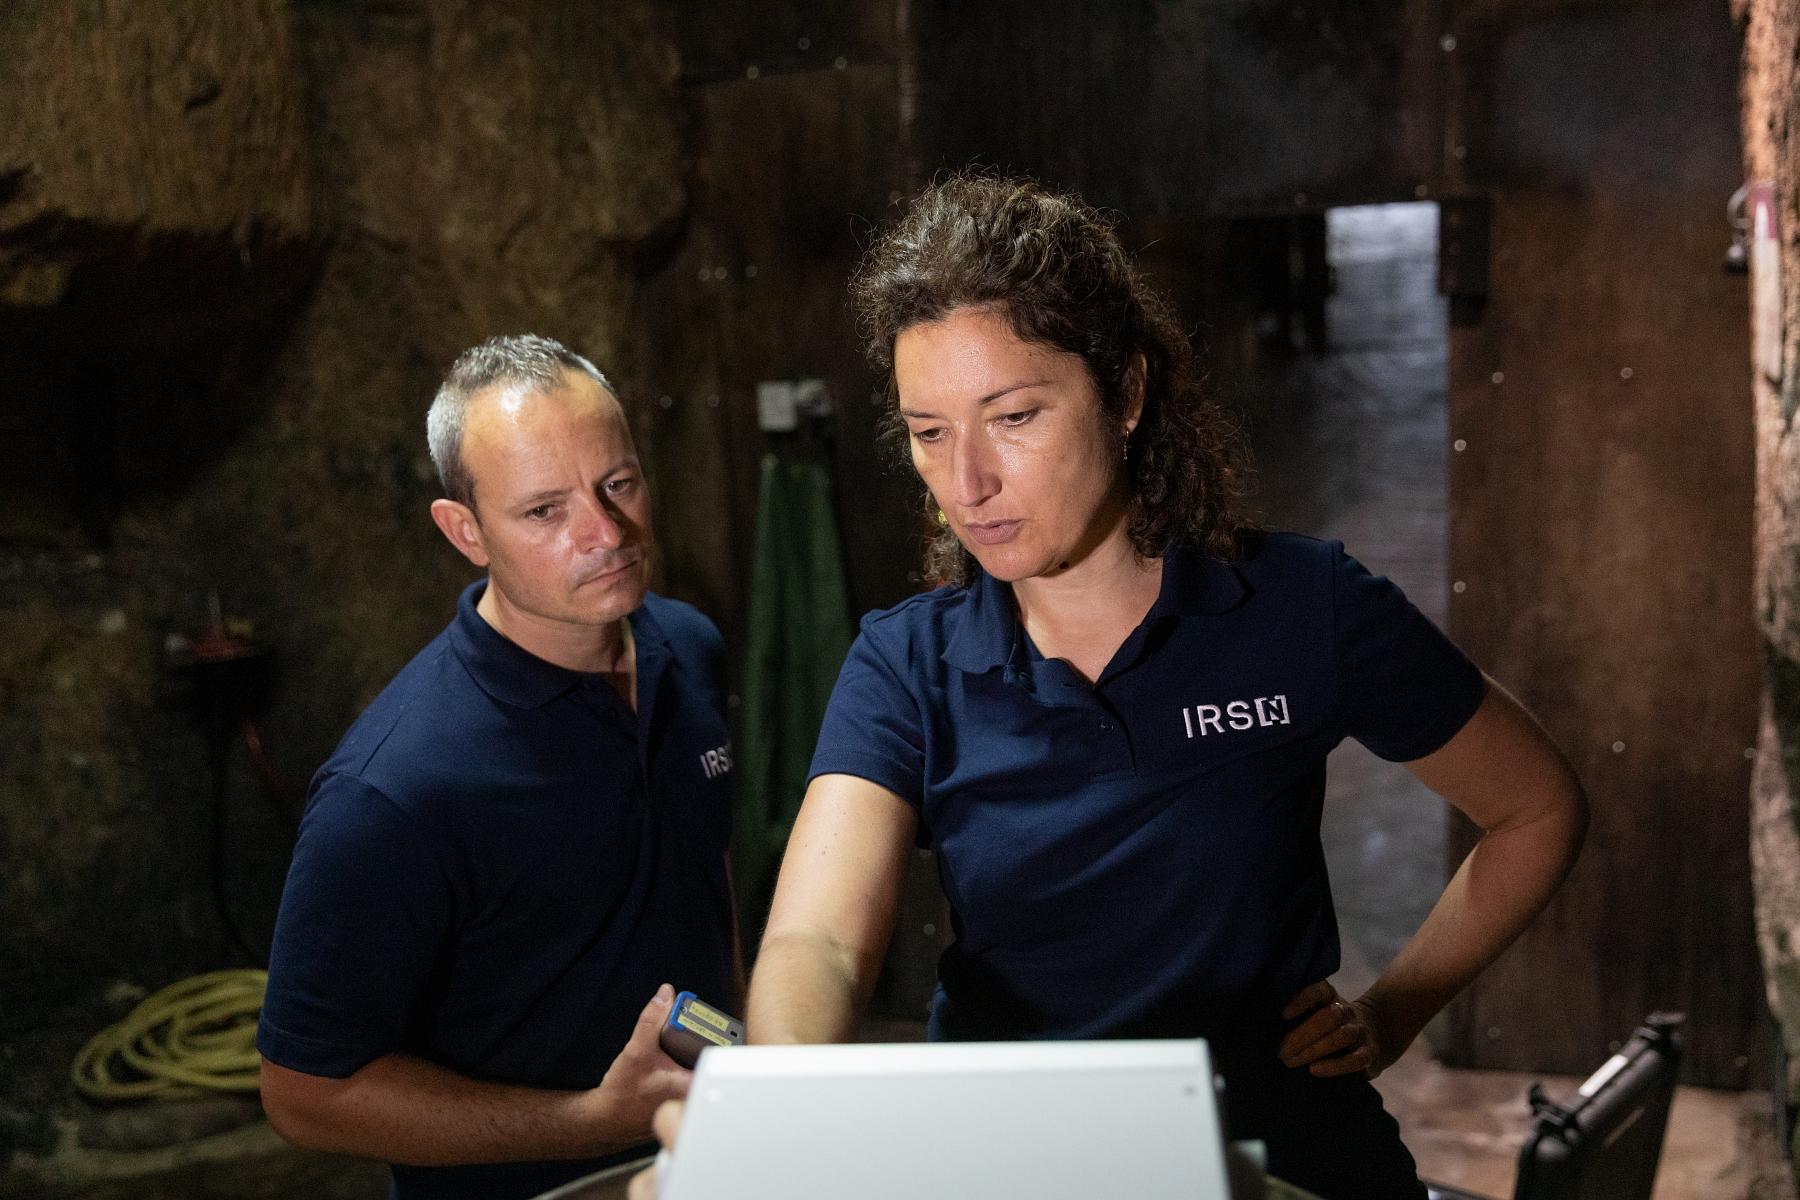  Légende : Dans la cave du Domaine Fouet, Caroline Vignaud et Laurent Destacamp, tous deux ingénieurs au Bureau d’étude et d’expertise du radon (BERAD) de l’IRSN, manipulent un RPM 2200 (SARAD), un moniteur de descendants du radon et thoron